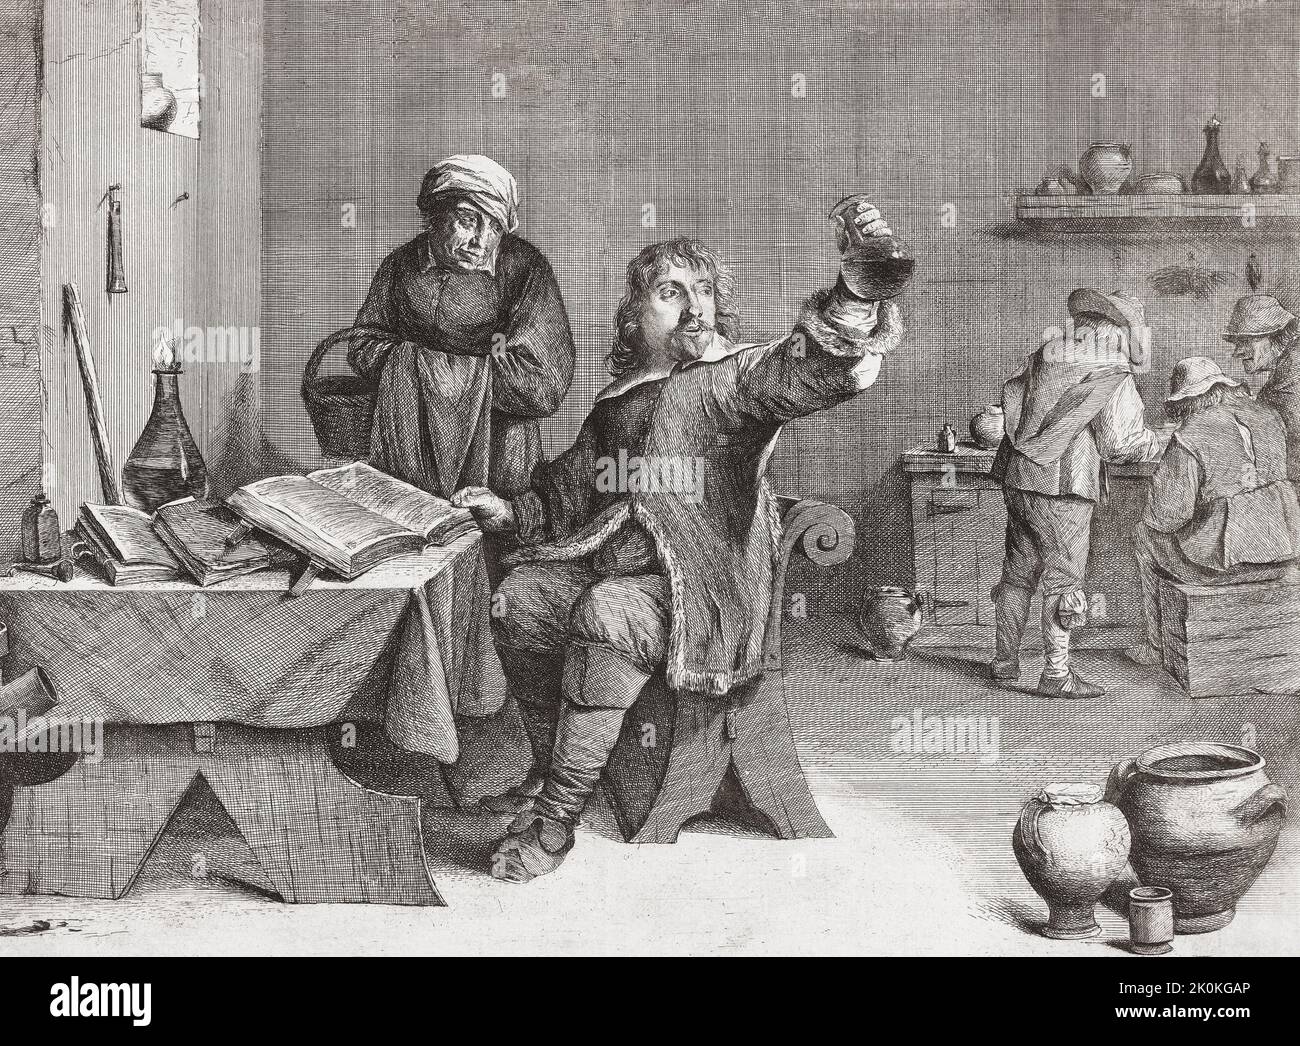 Un médico europeo del siglo 17th examina un frasco de orina de una paciente anciana. Después de una impresión del siglo 17th de Quirin Boel después de la pintura de David Teniers. Foto de stock